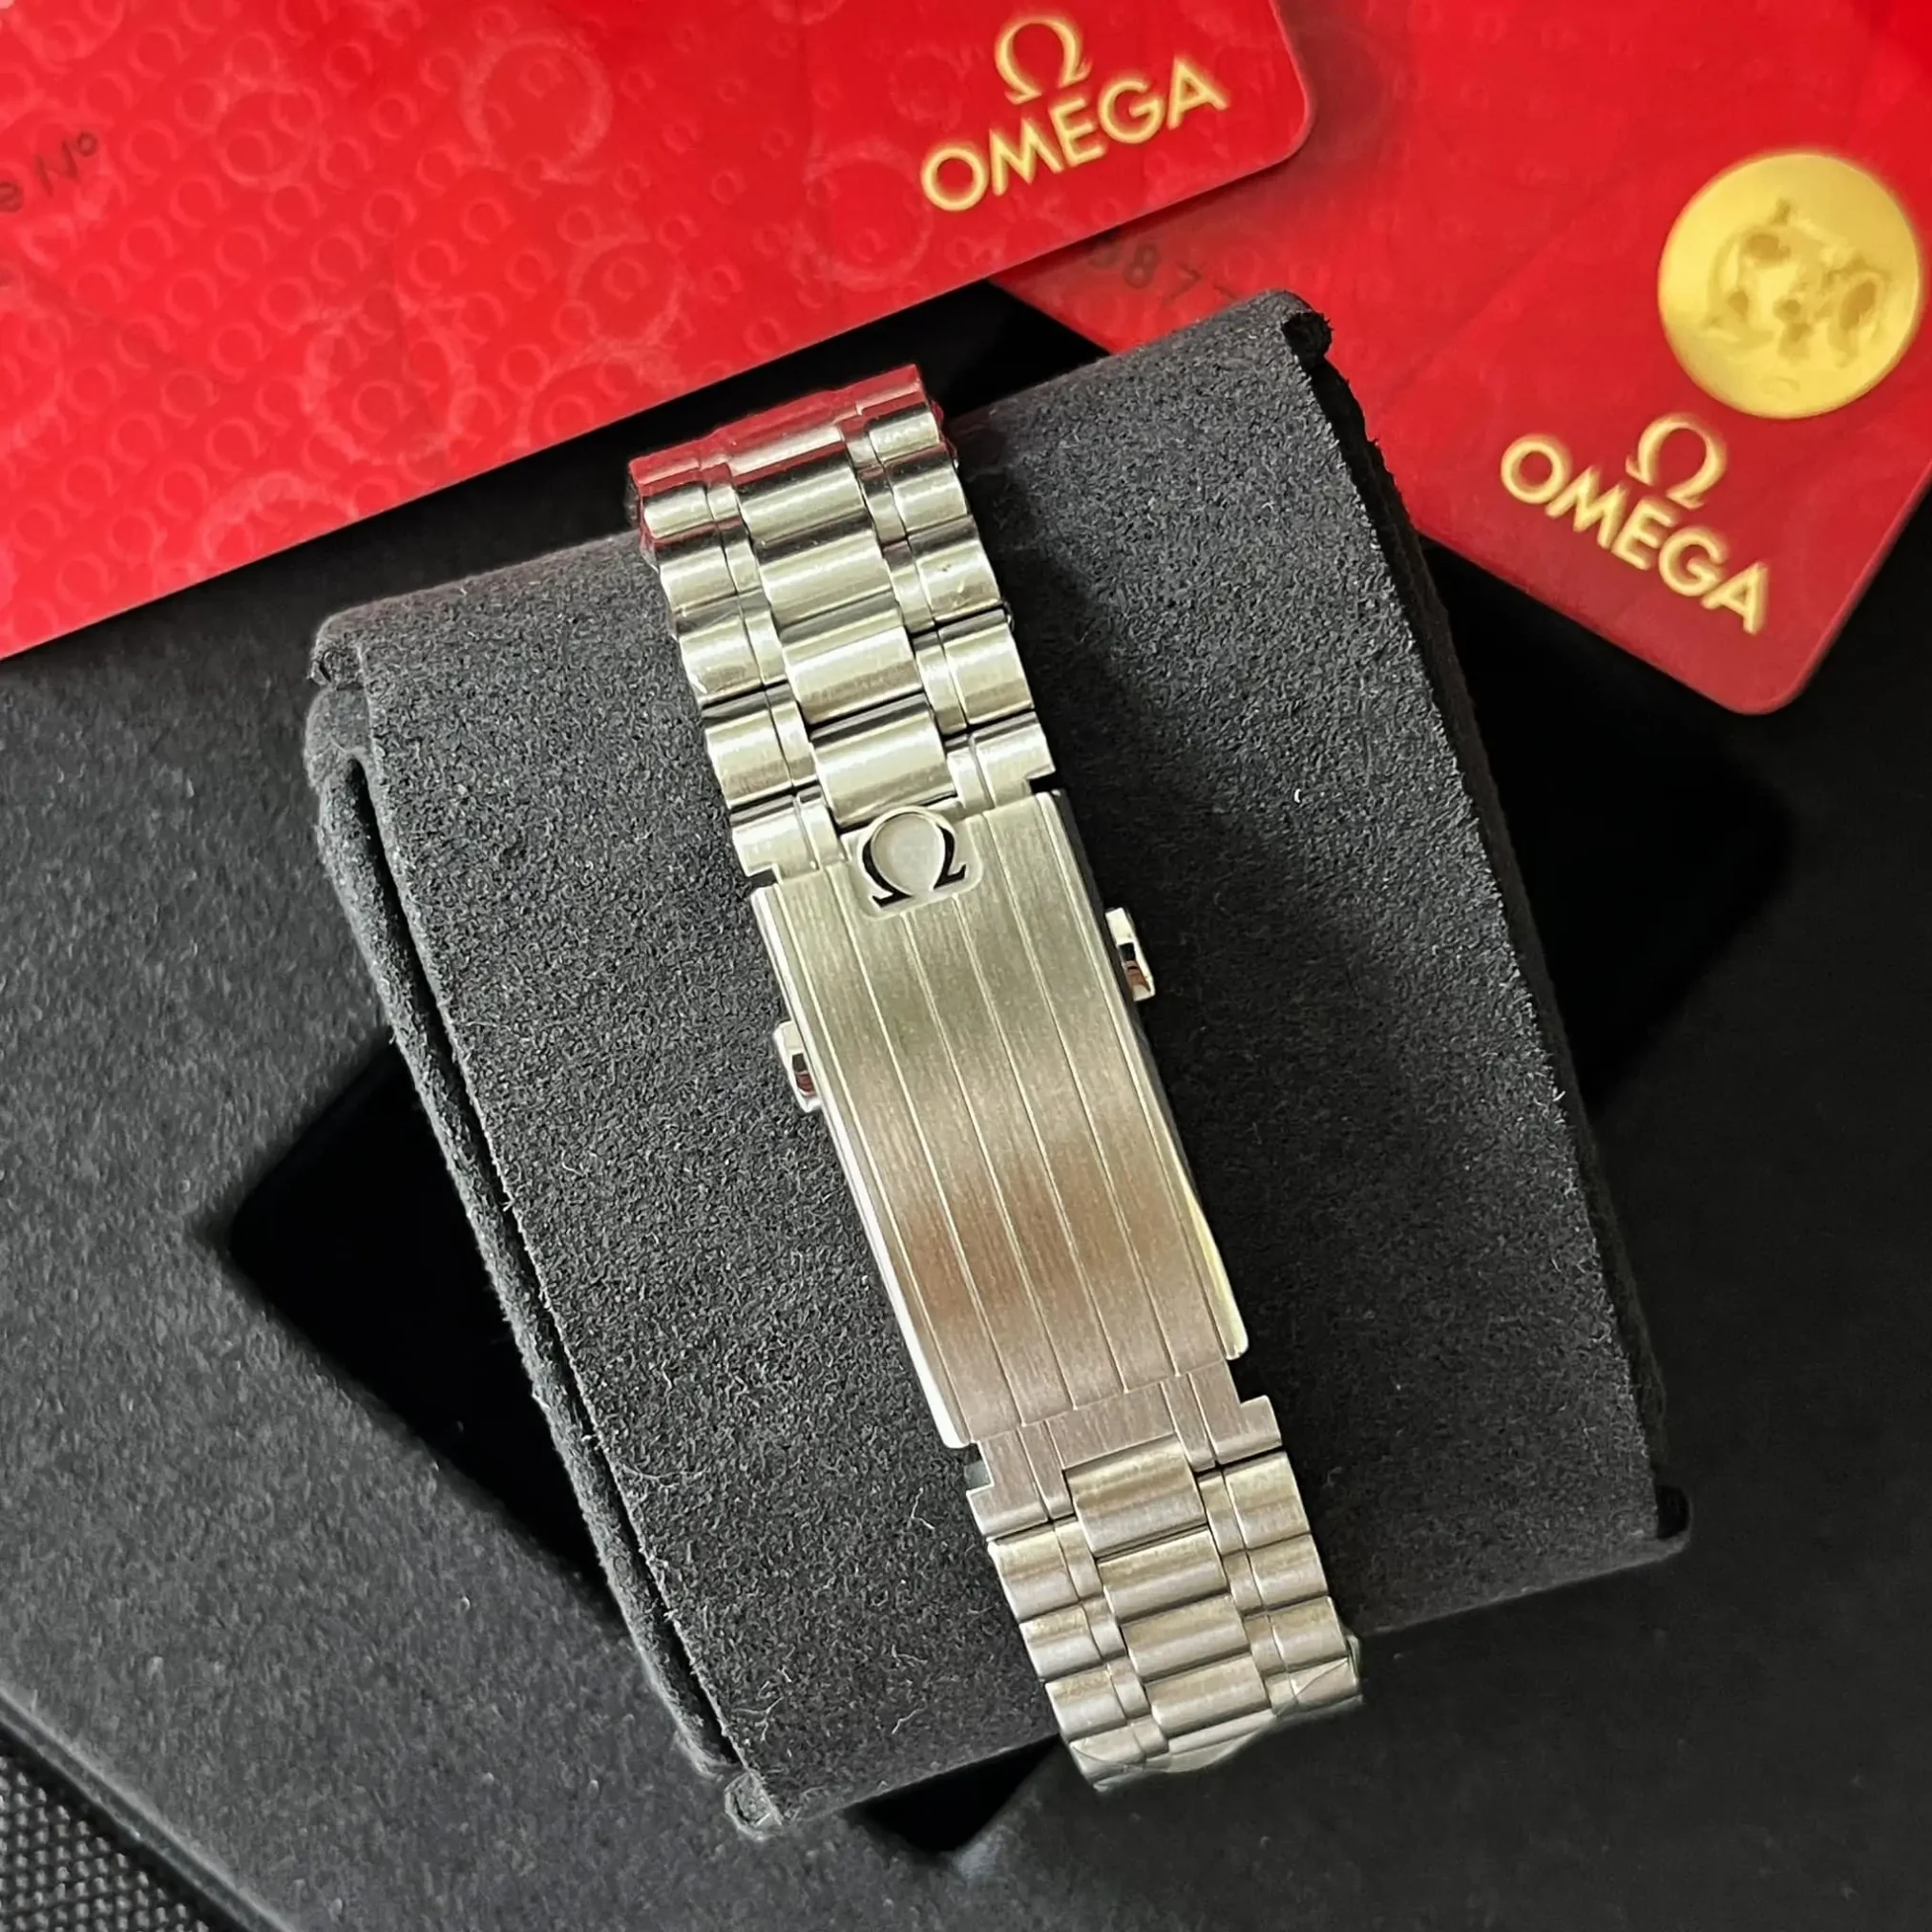 Đồng hồ Omega Speedmaster Moonwatch Professional Chronometer Chronograph 310.30.42.50.01.001 mặt số màu đen. Dây đeo bằng thép. Thân vỏ bằng thép.